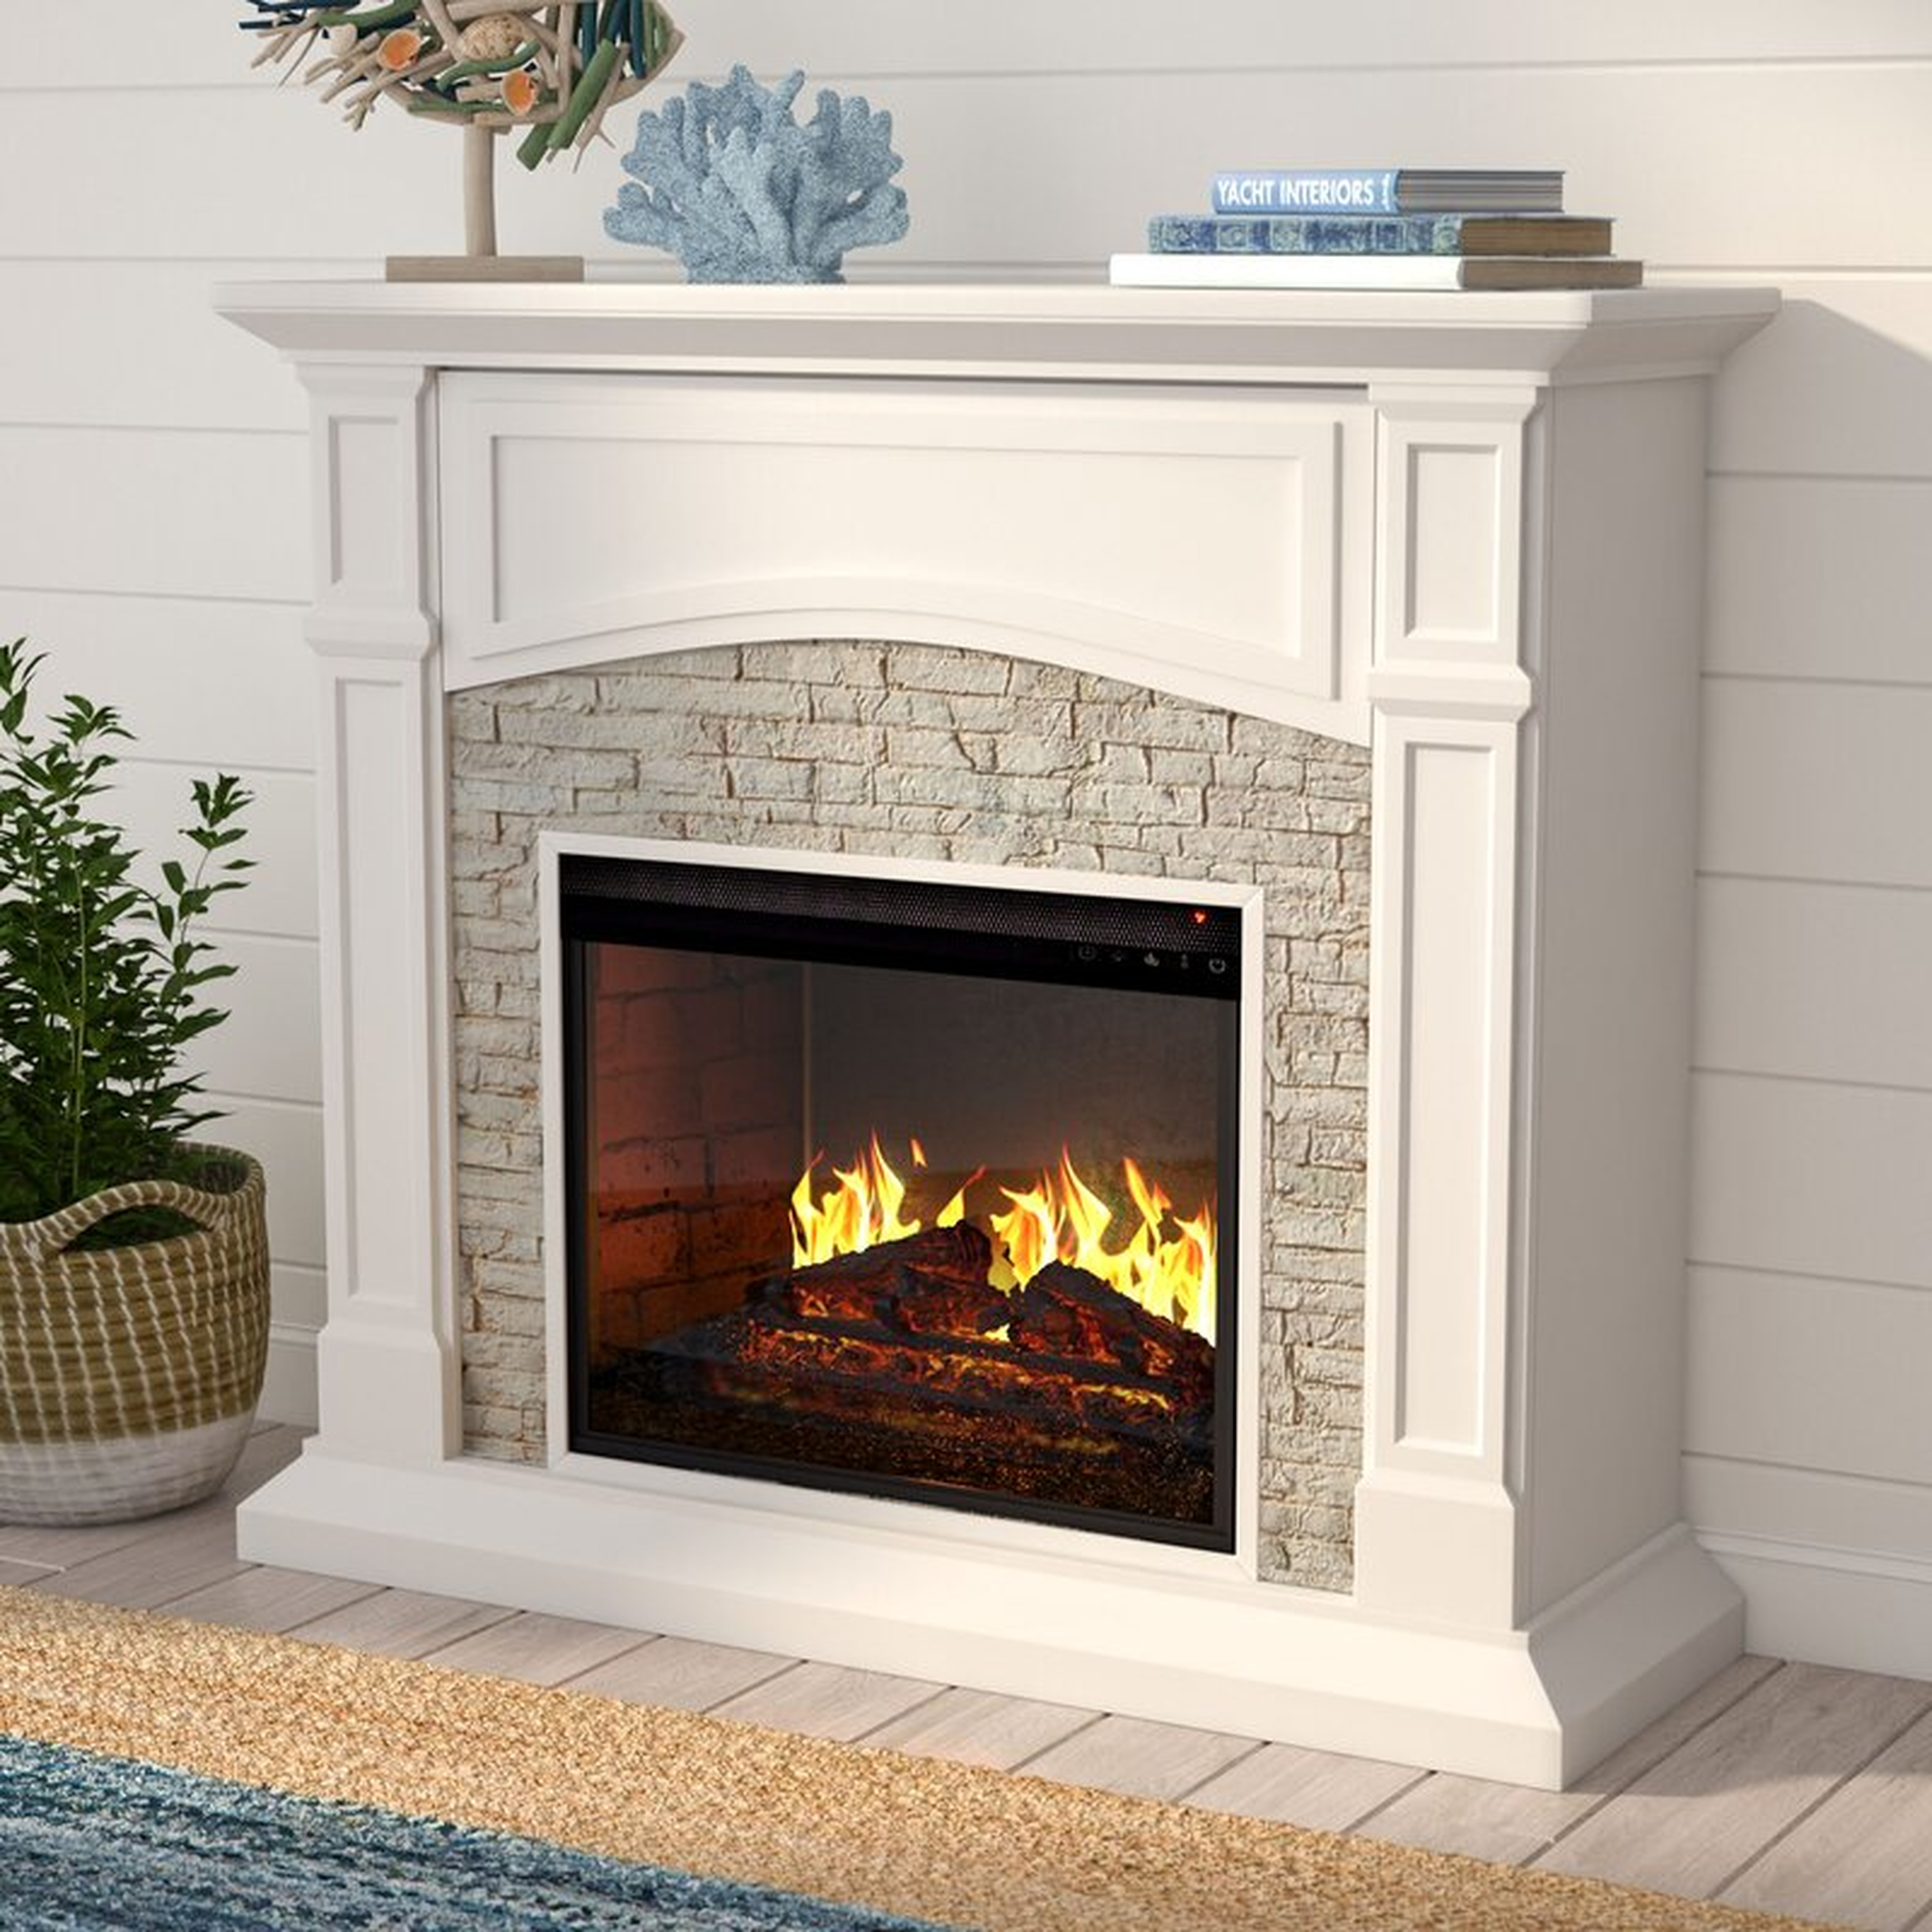 https://www.wayfair.com/home-improvement/pdp/alcott-hill-shanley-electric-fireplace-w002475423.html - Wayfair